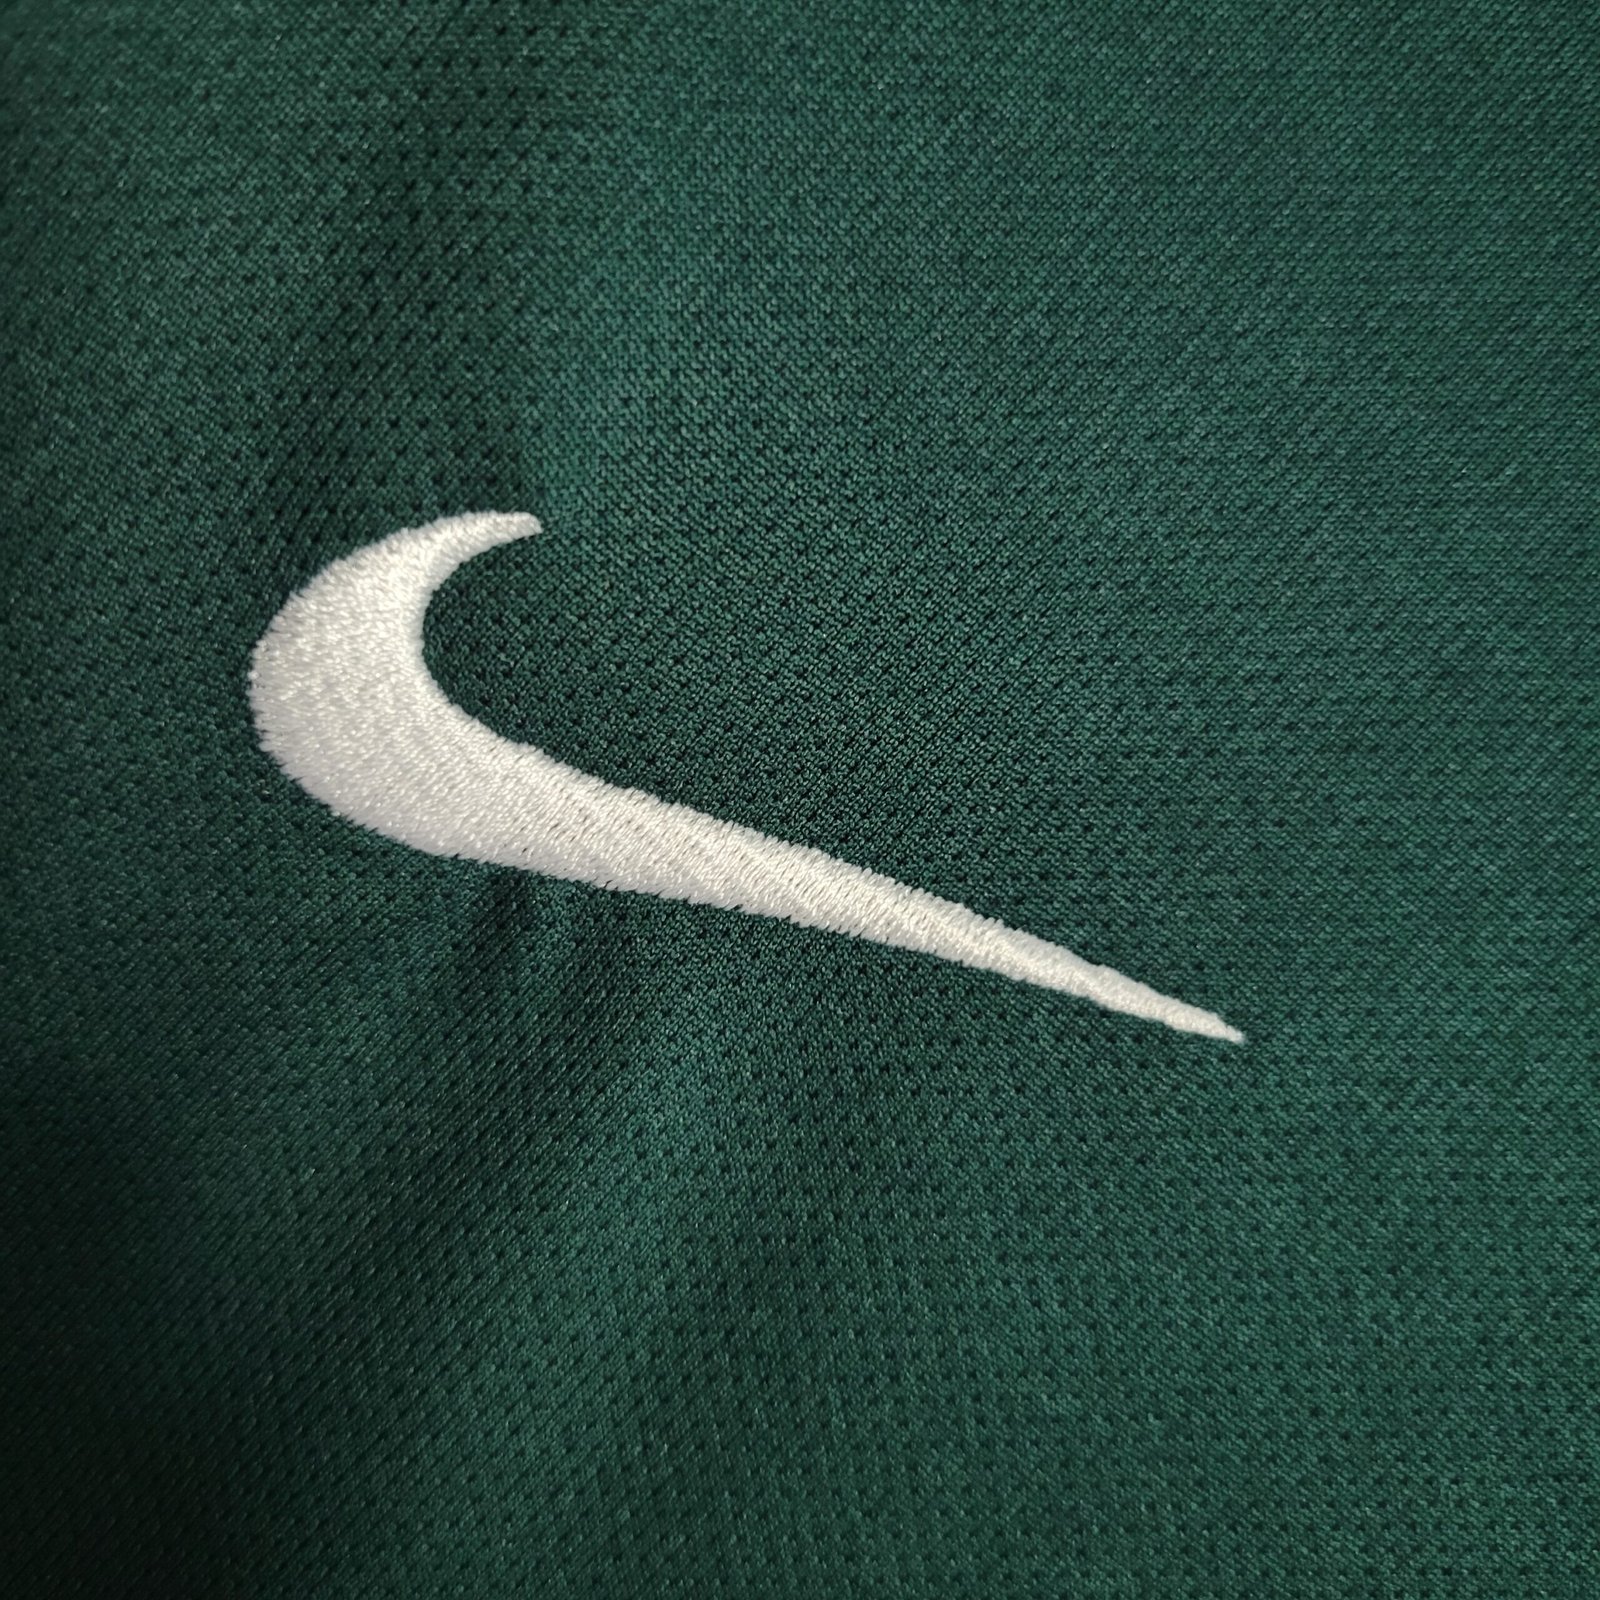 Camisa (Goleiro) Brasil (Verde) 1998 – Retro (Pronta Entrega) – Tamanho GG  – KS Sports – Camisas de Times e Seleções